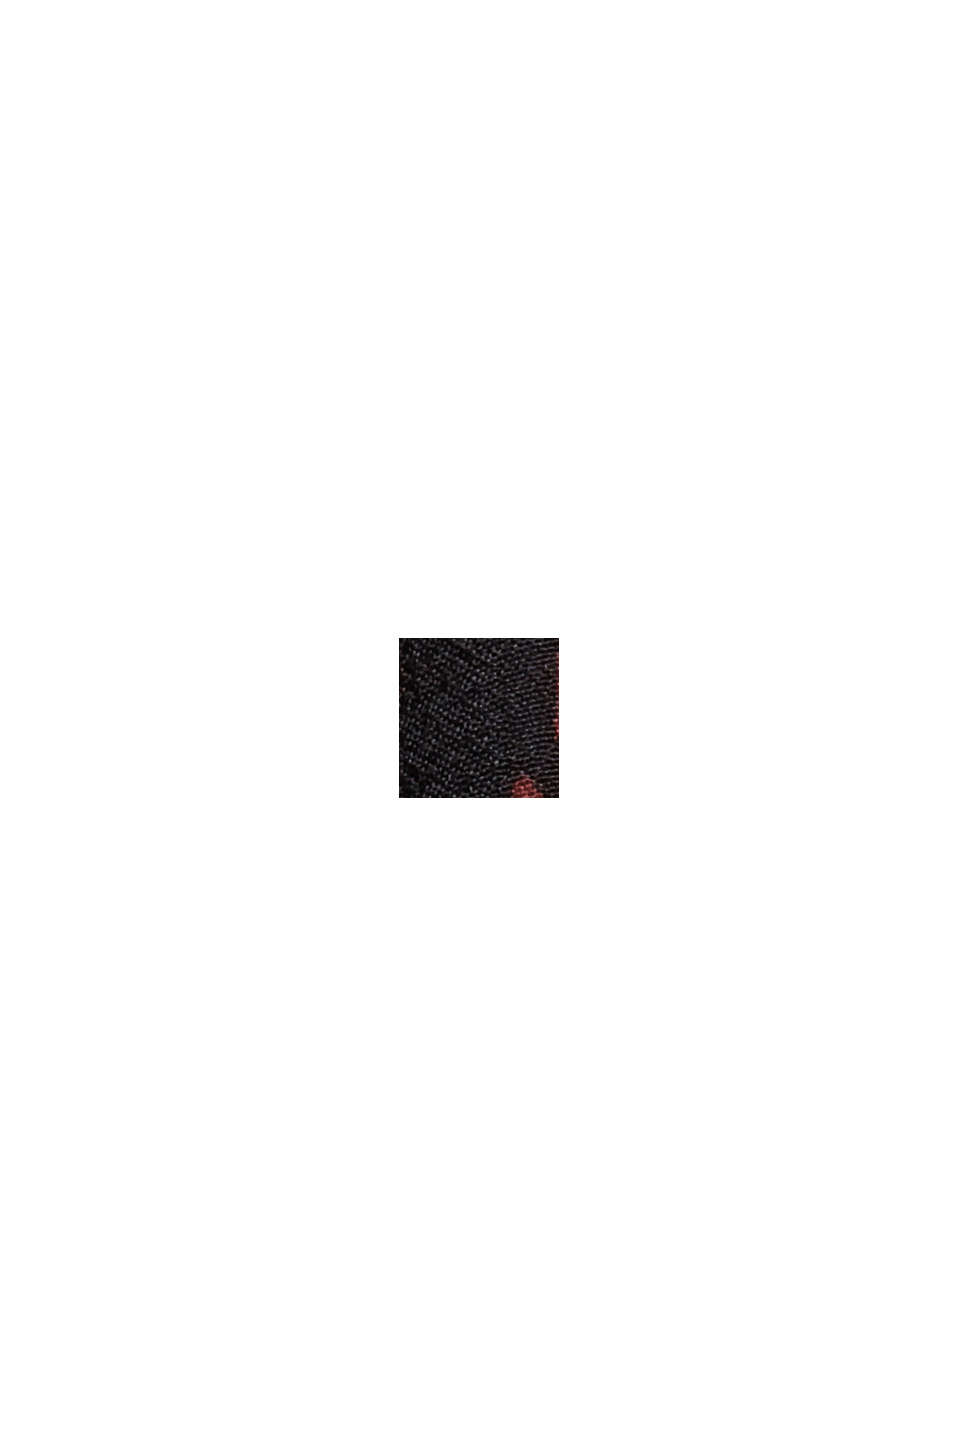 Tunika-Bluse mit Print und Volantssaum, BLACK, swatch